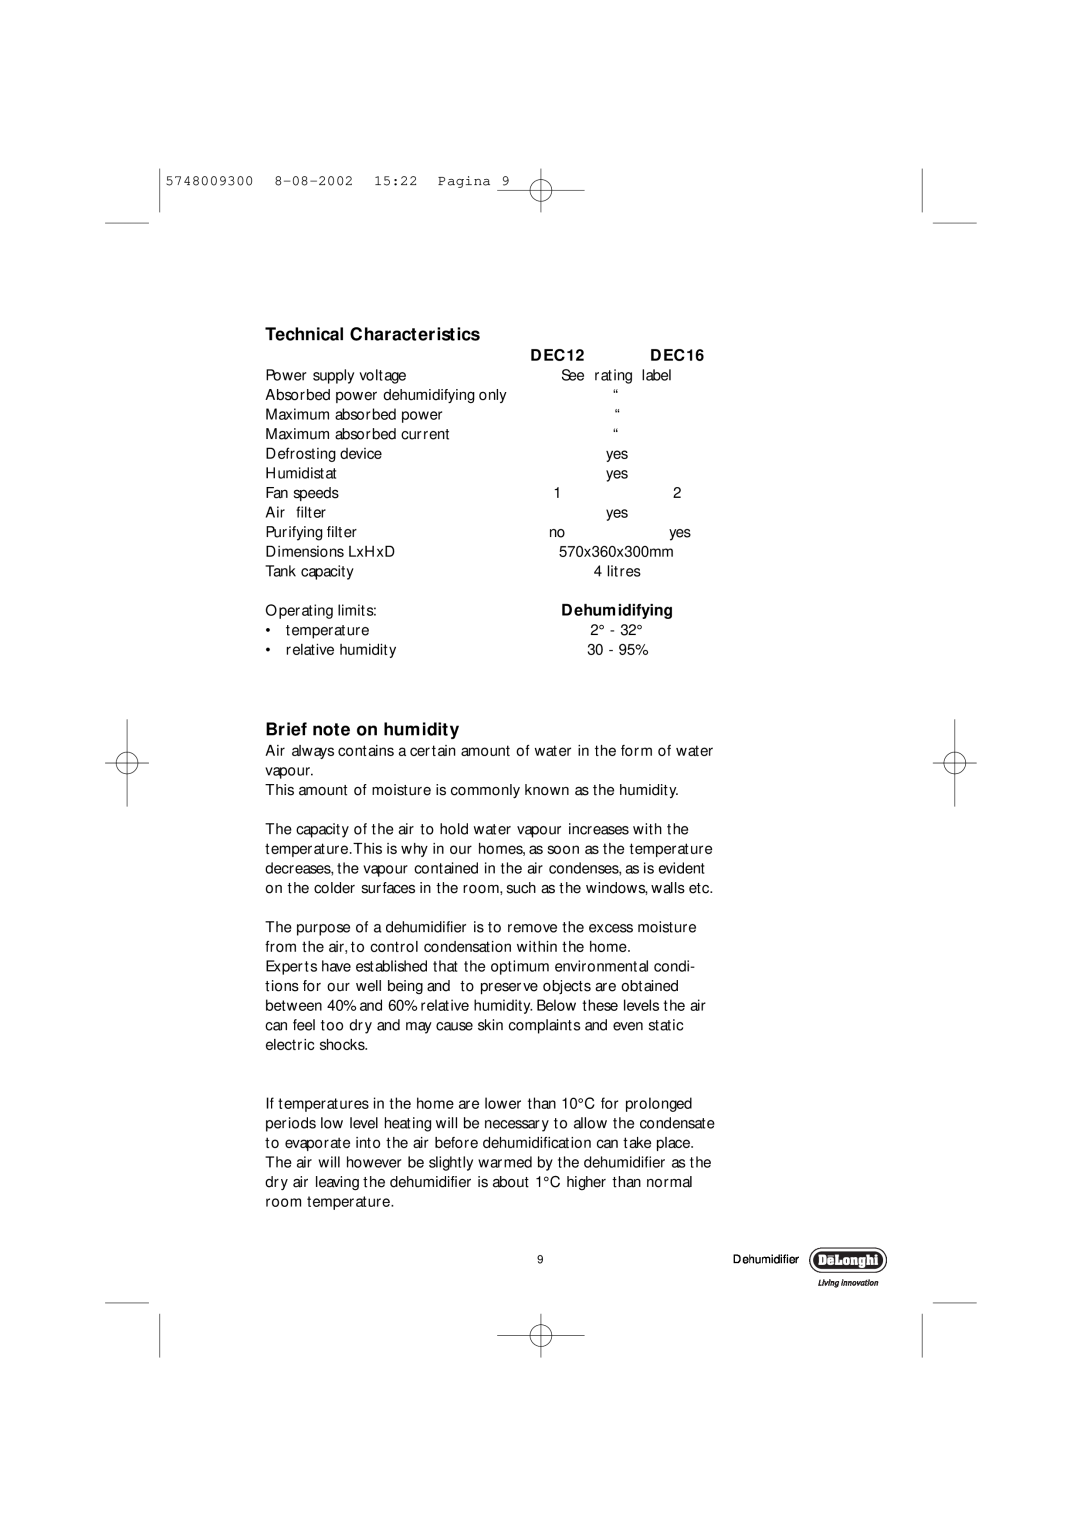 DeLonghi DEC12 manual Technical Characteristics, Brief note on humidity, DEC16, Dehumidifying 